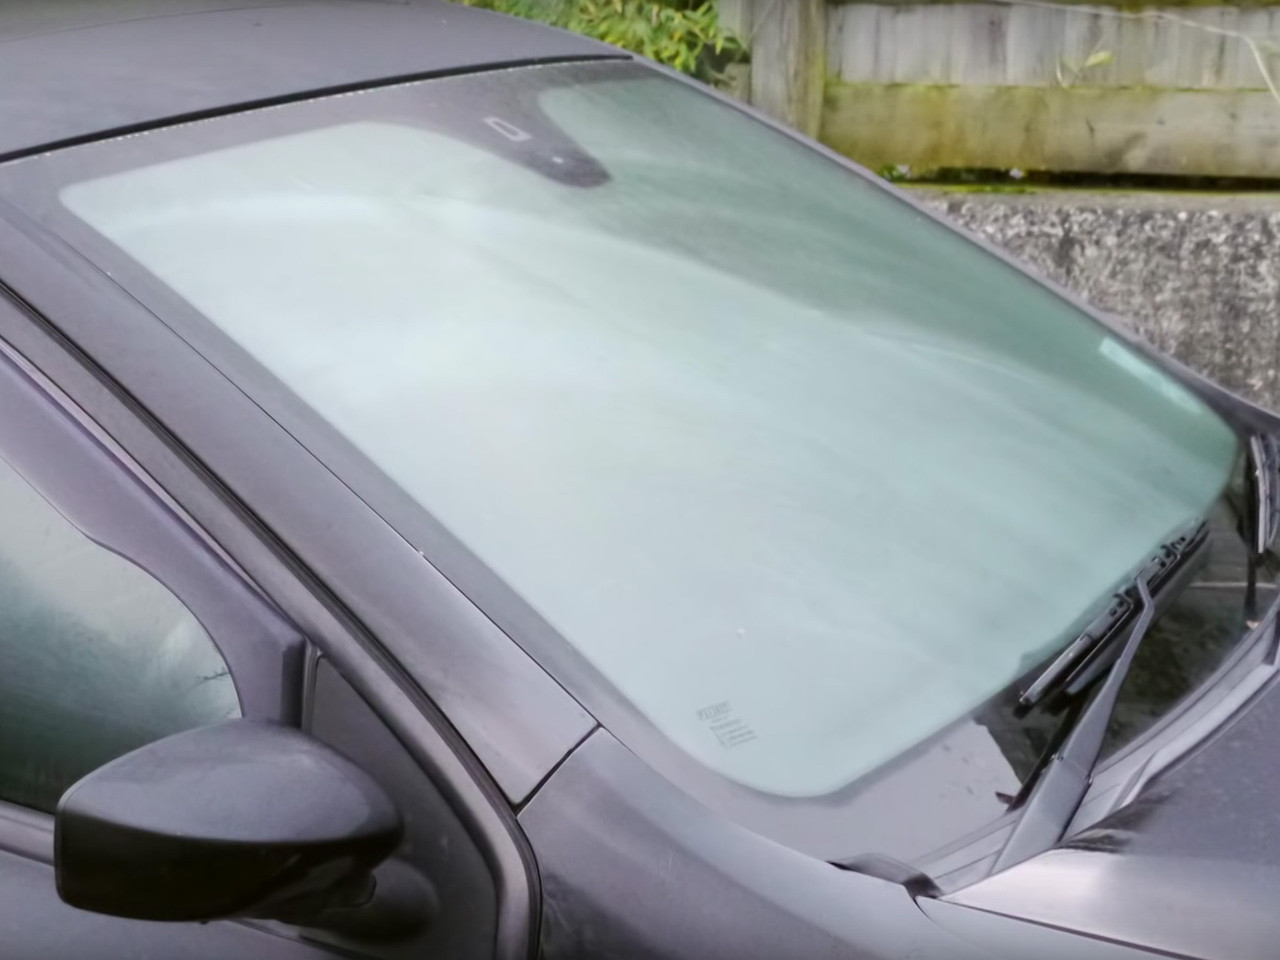 Luftentfeuchter für Autos: So vermeiden Sie beschlagene Scheiben